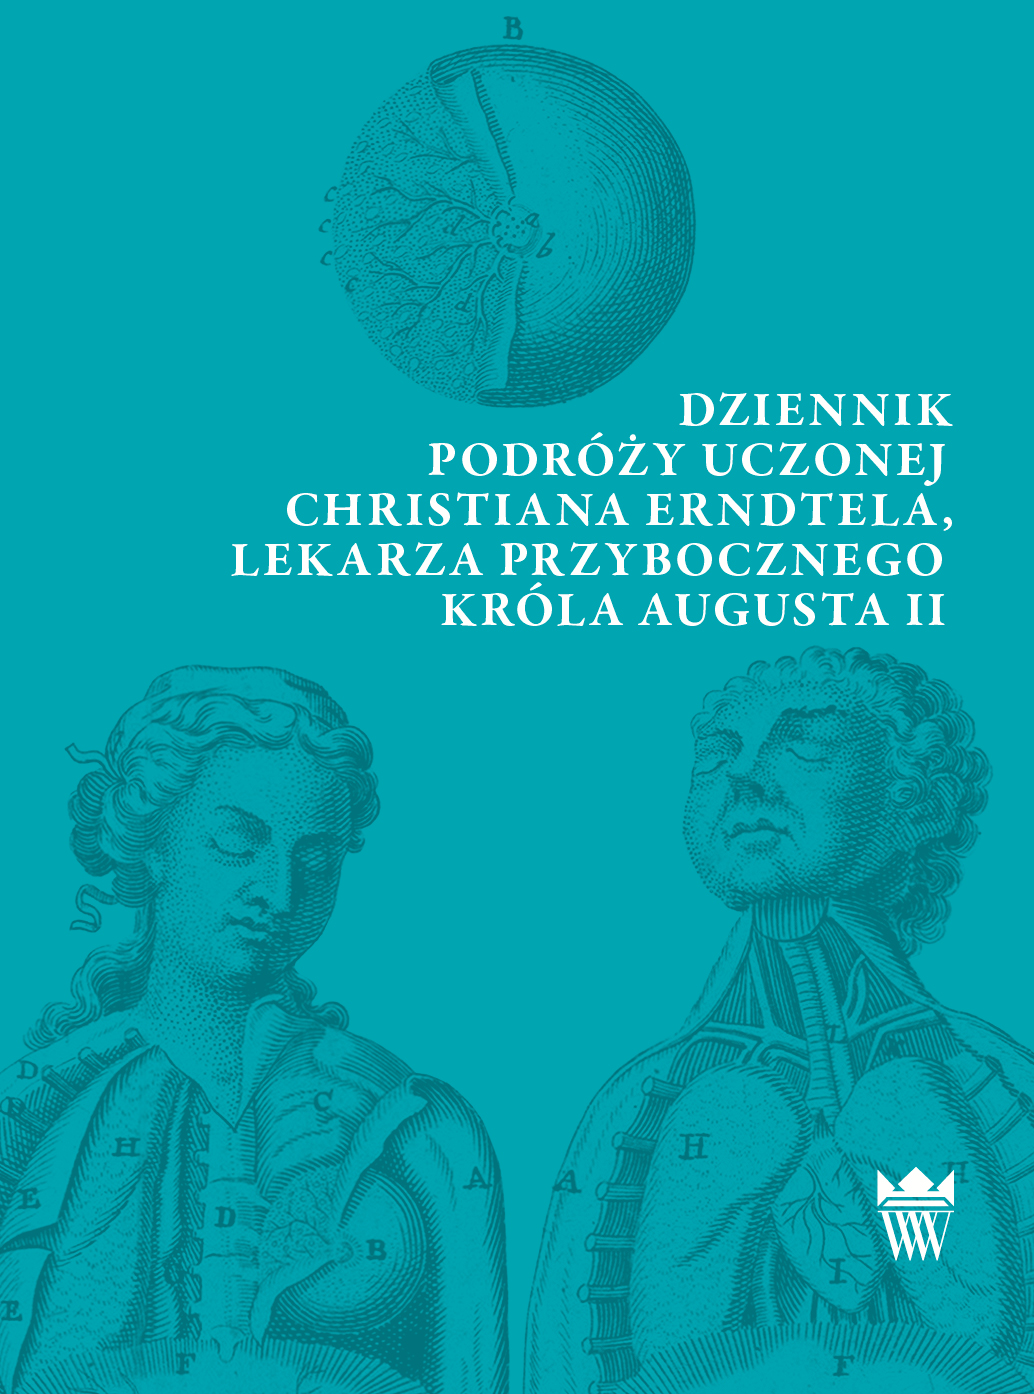 Dziennik podróży uczonej Christiana Erndtela, lekarza przybocznego Augusta II